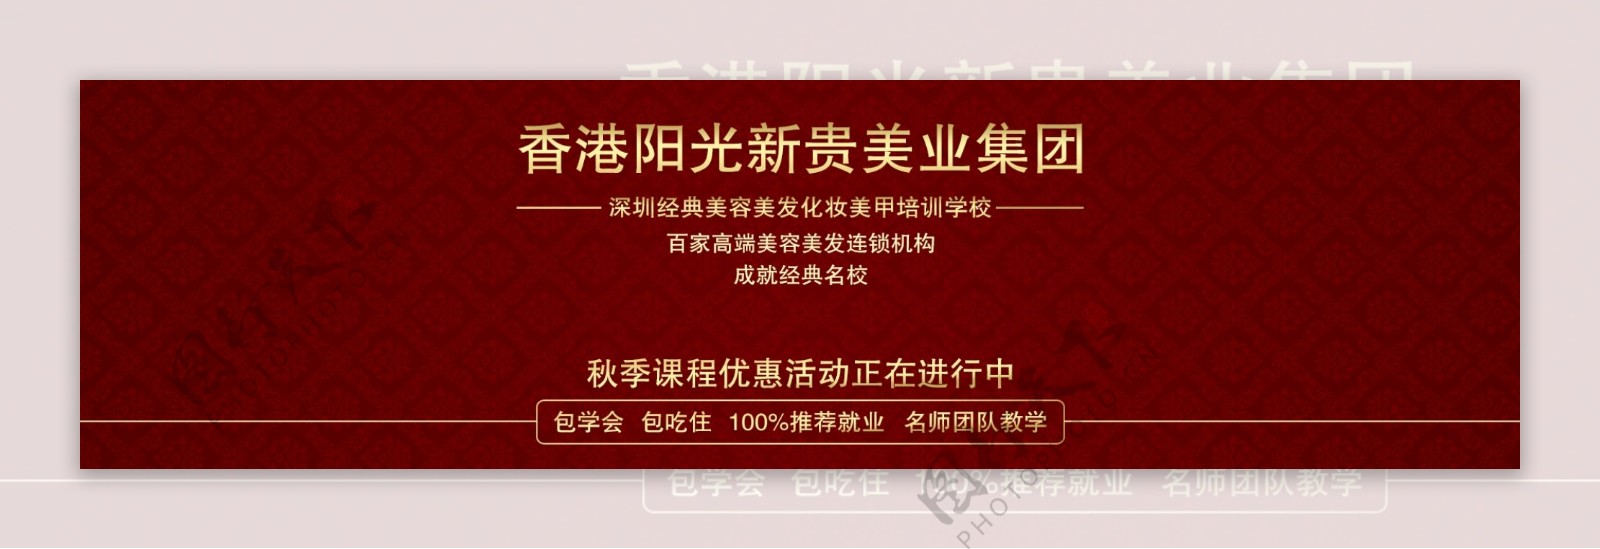 美容集团行业网站banner